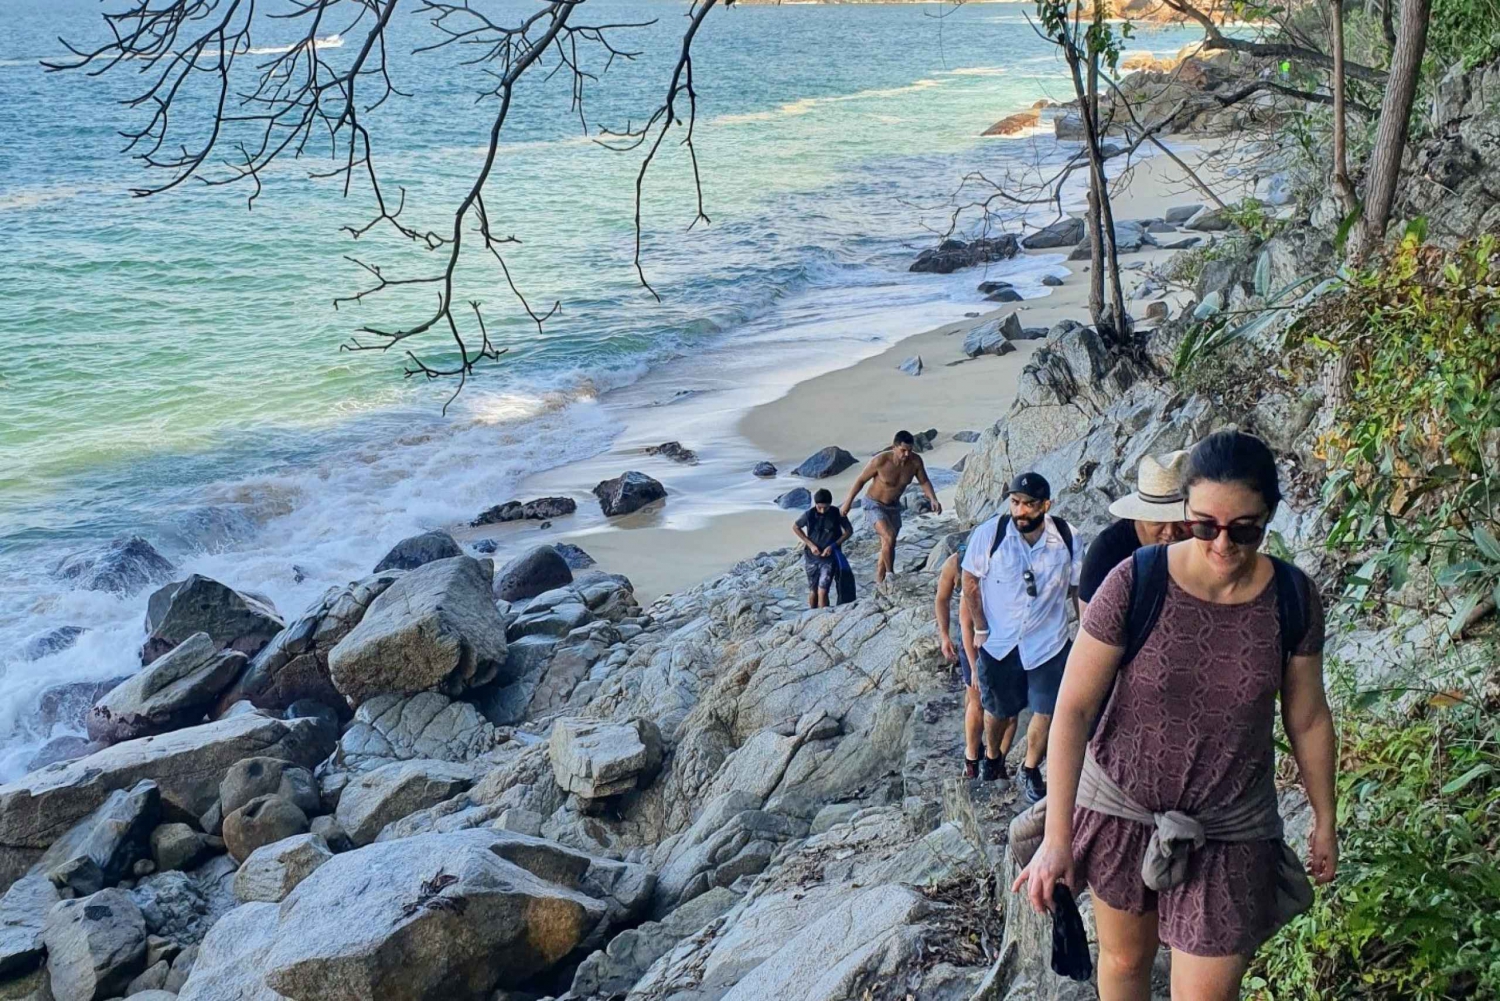 Puerto Vallarta: Full Day Hike to 6 Hidden Beaches & Snorkel